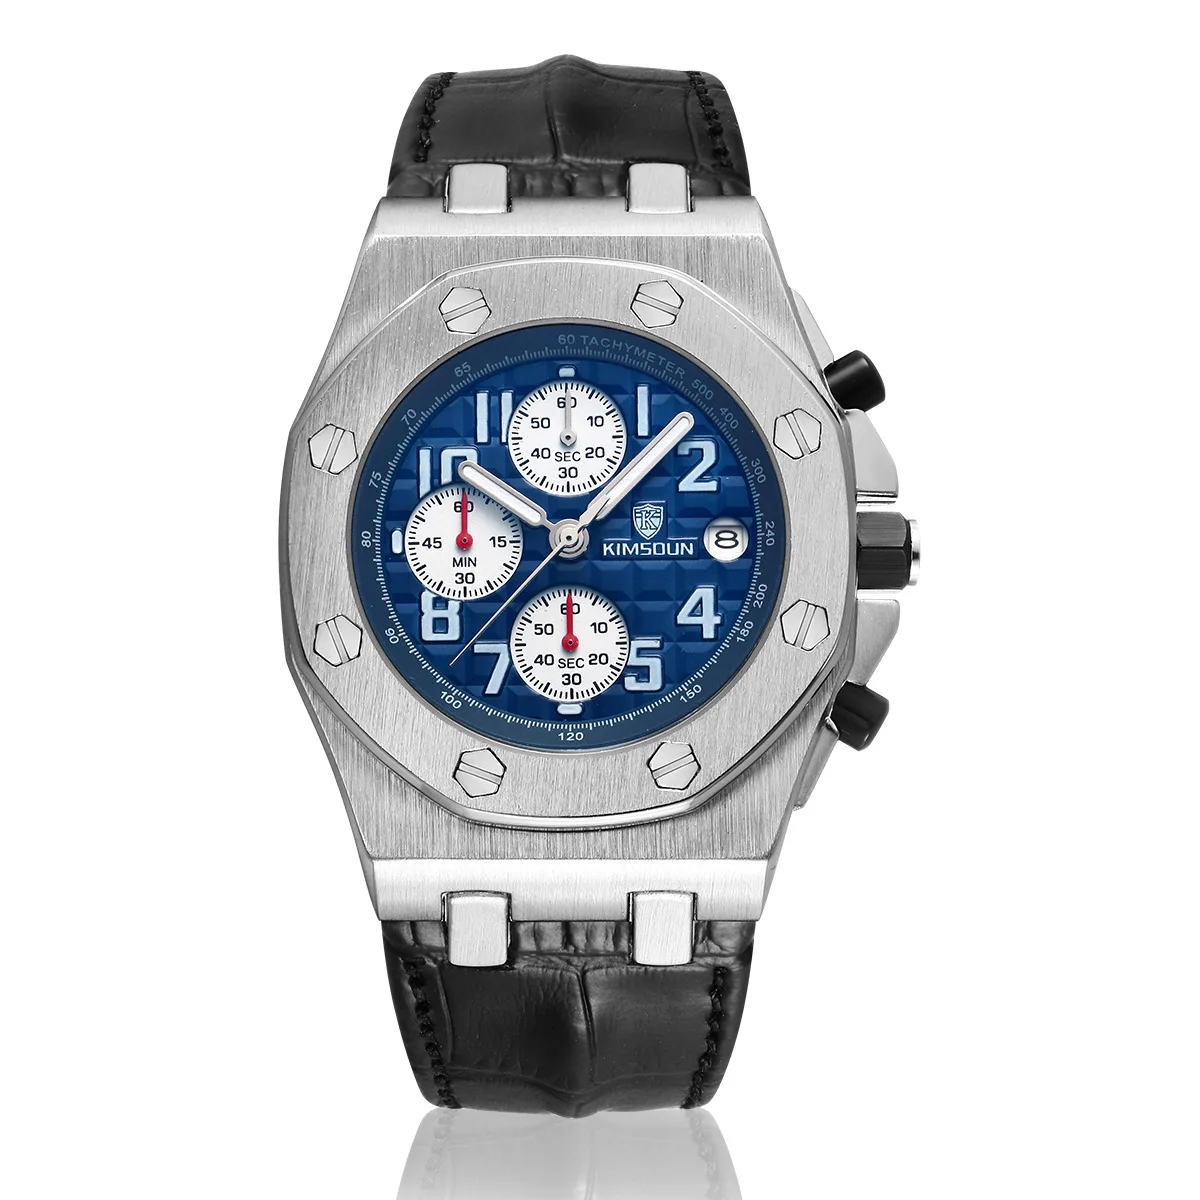 Switzerland Royal Rolexable Japan Miyota кварц часы три глаза многофункциональный синхронизации кожа водонепроницаемый календарь montre homme - Цвет: Серебристый